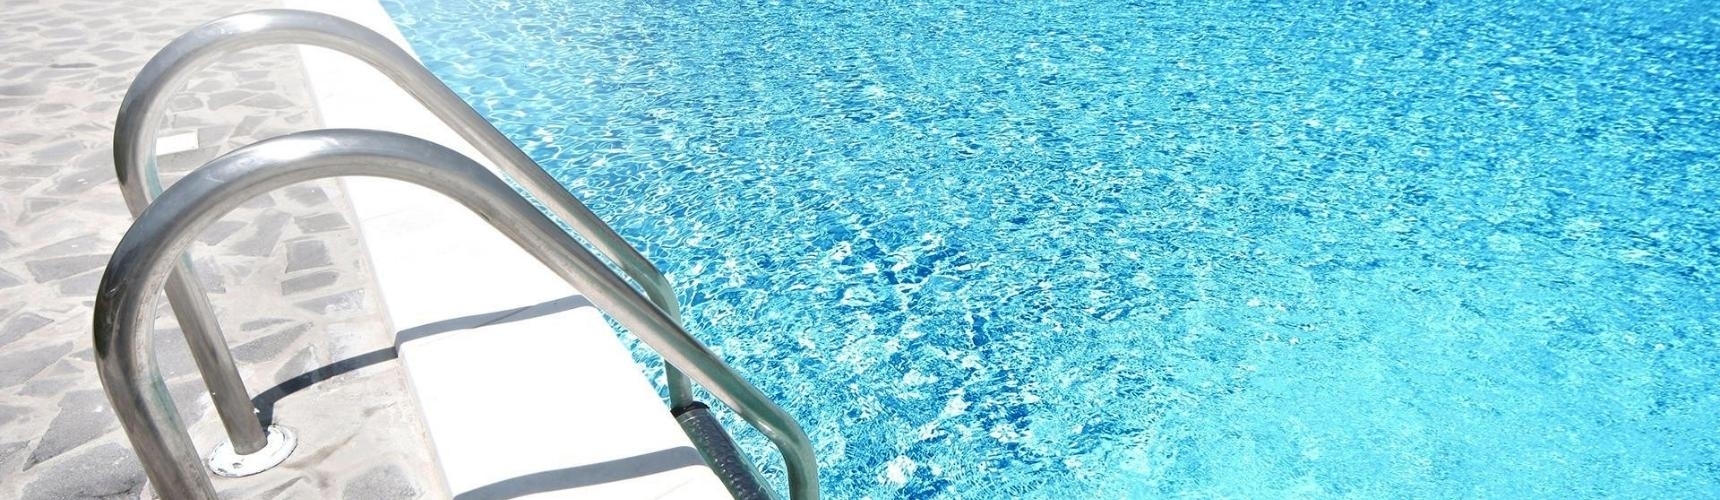 Vstupní zařízení – bazénové schůdky a žebříky